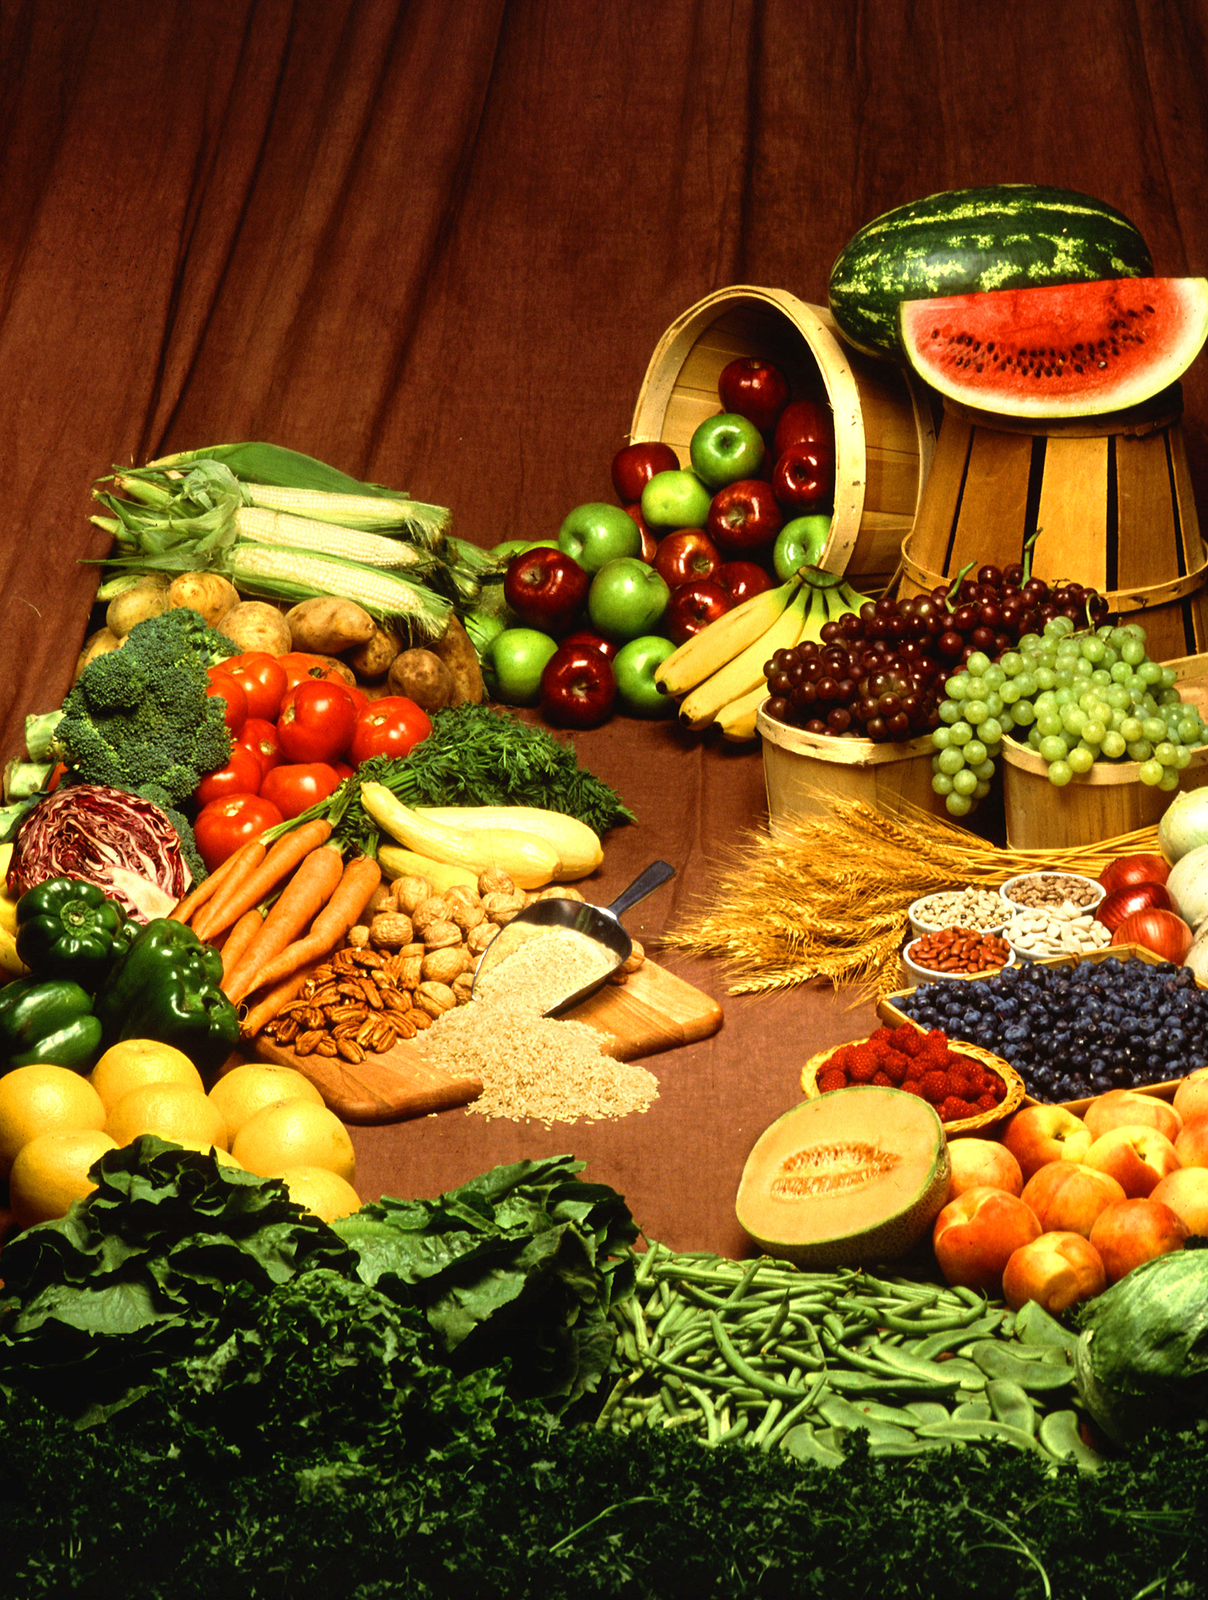 Fotografia przedstawiająca warzywa i owoce bogate w cukry: jabłka, arbuzy, pomidory, brokuły, winogrona, marchew, jagody, kapusta